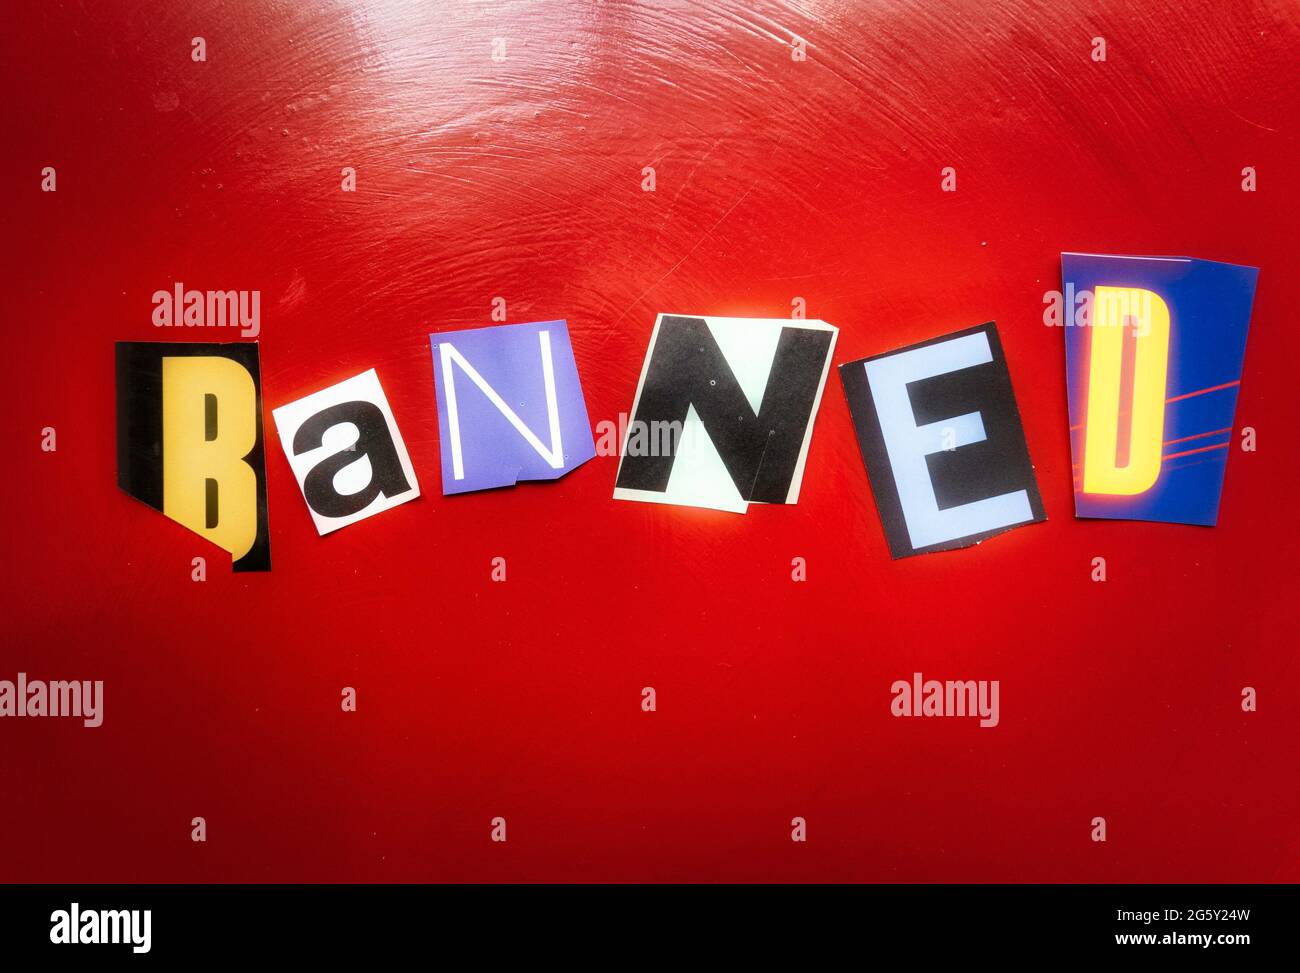 La parola 'banned' usando le lettere di carta tagliate nella tipografia dell'effetto di nota di riscatto Foto Stock